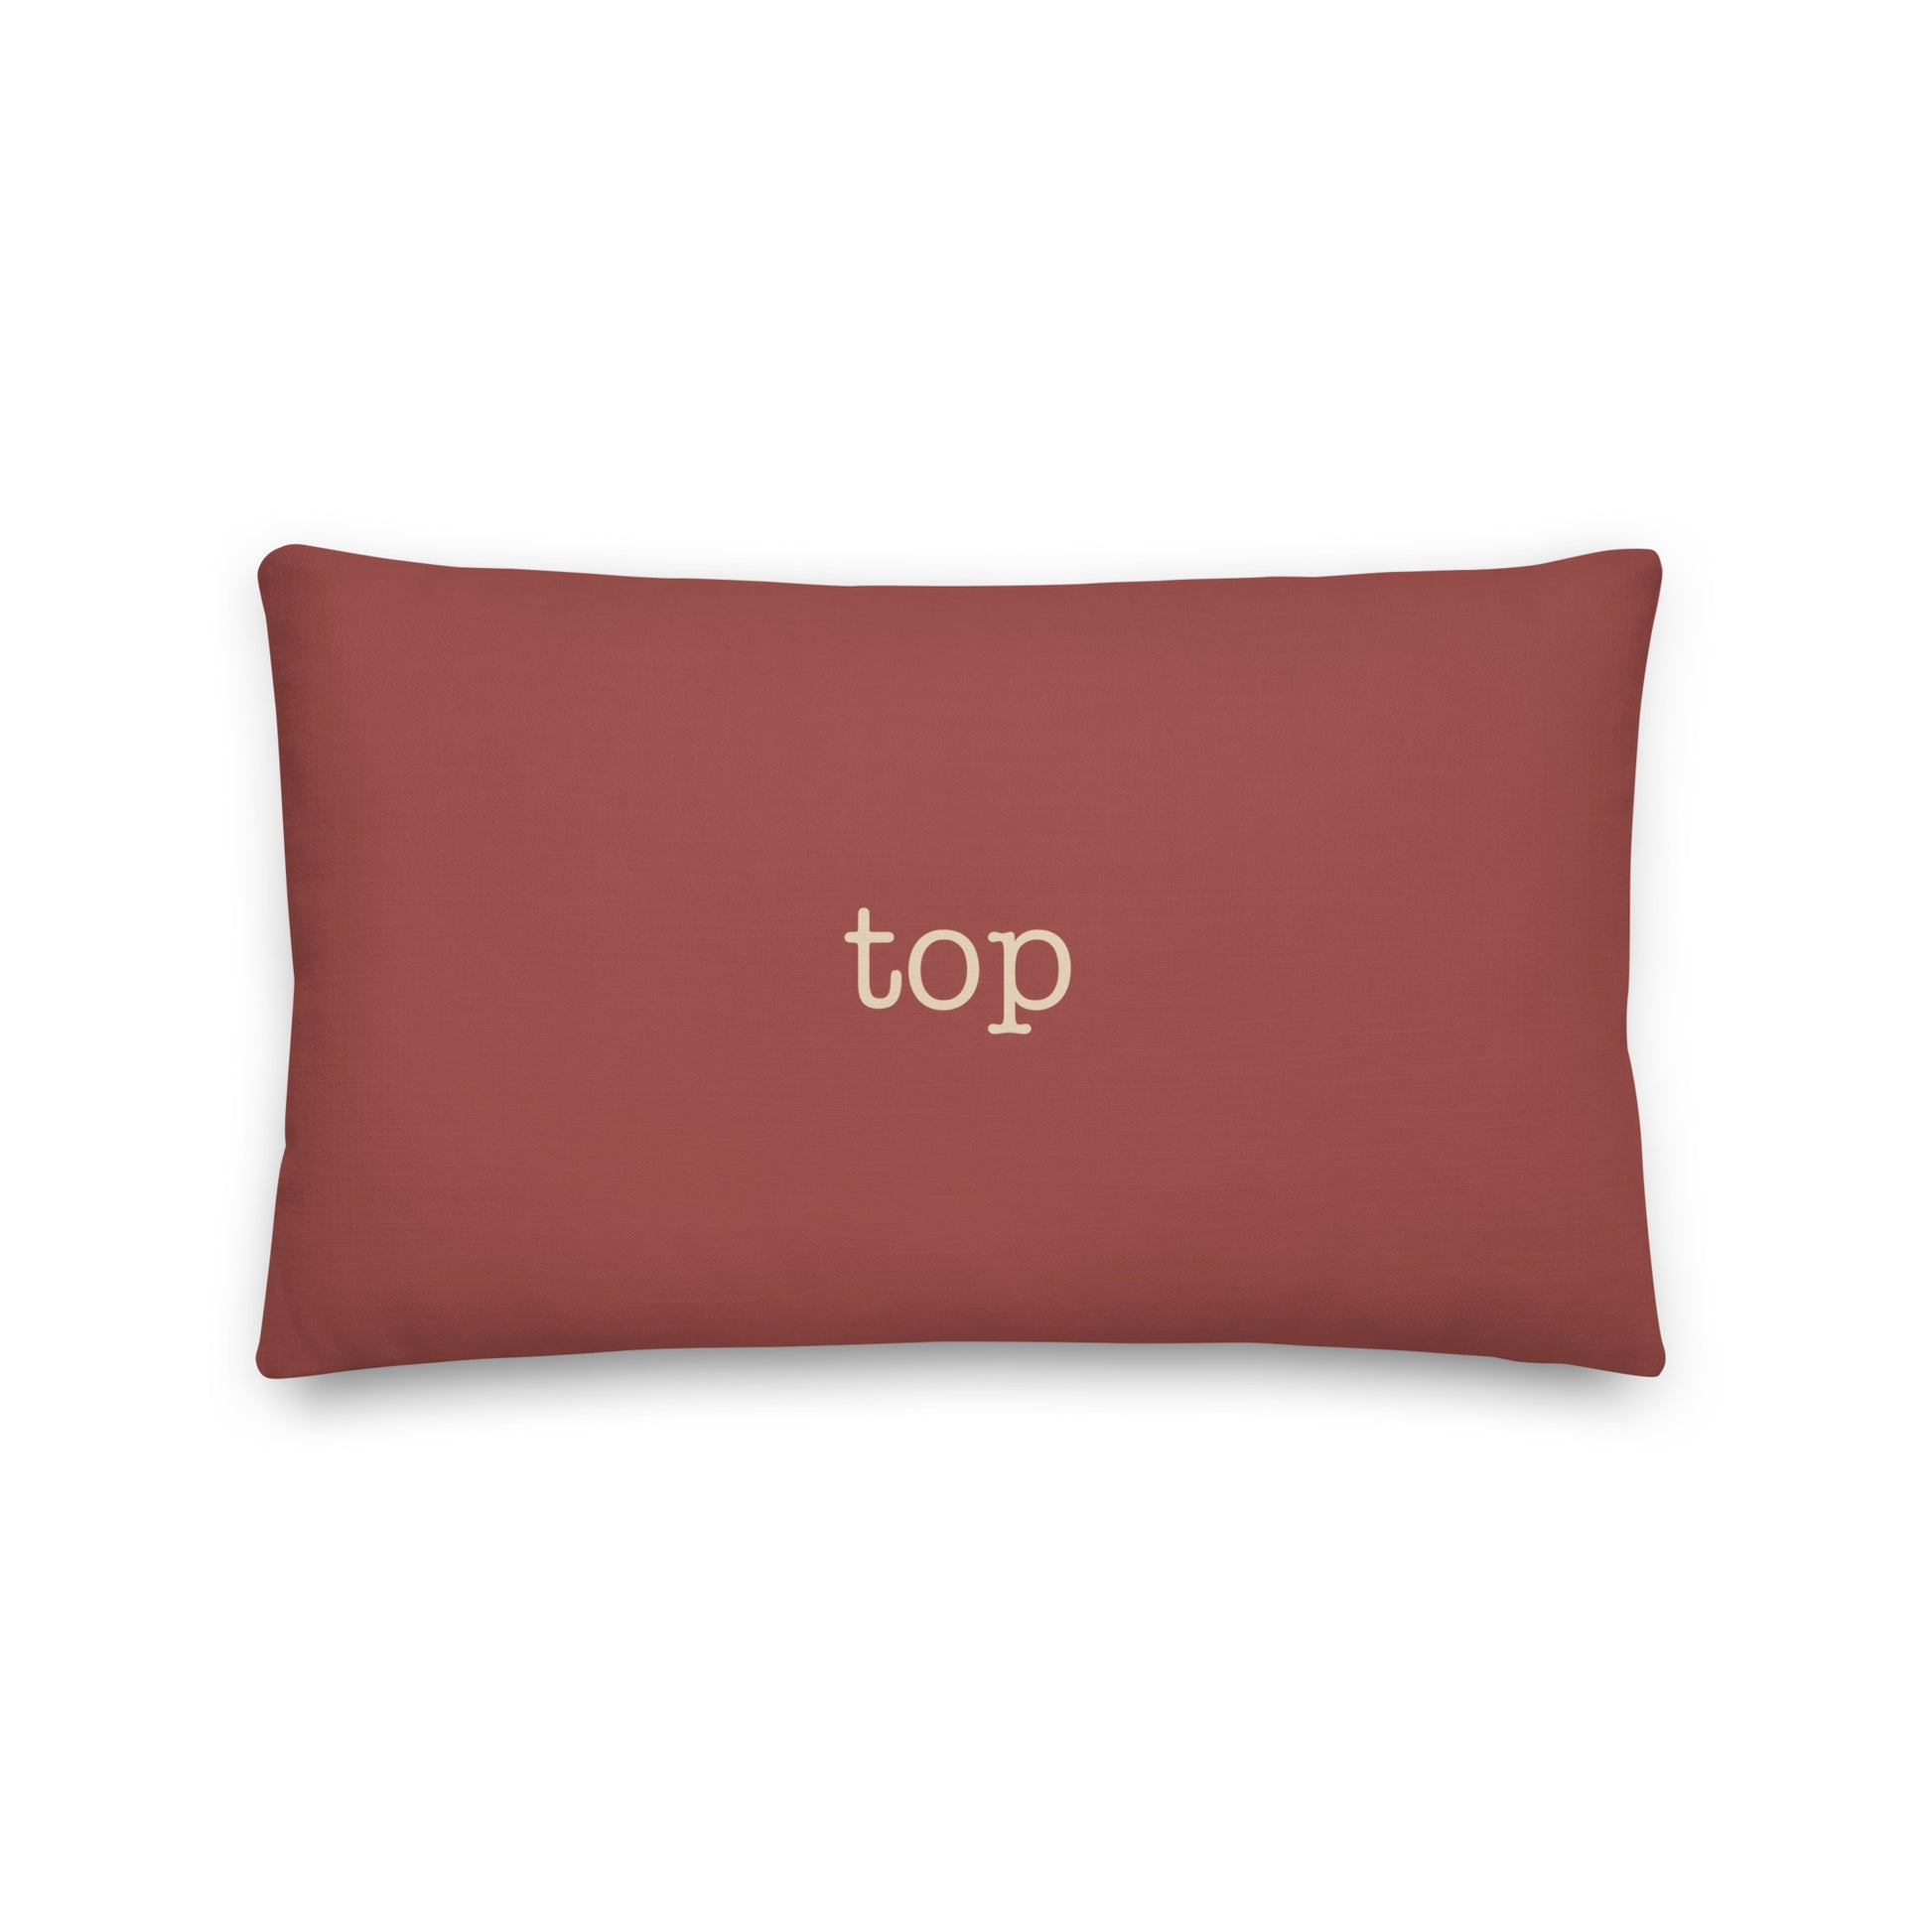 Typewriter Pillow - Terra Cotta • TOP Topeka • YHM Designs - Image 02